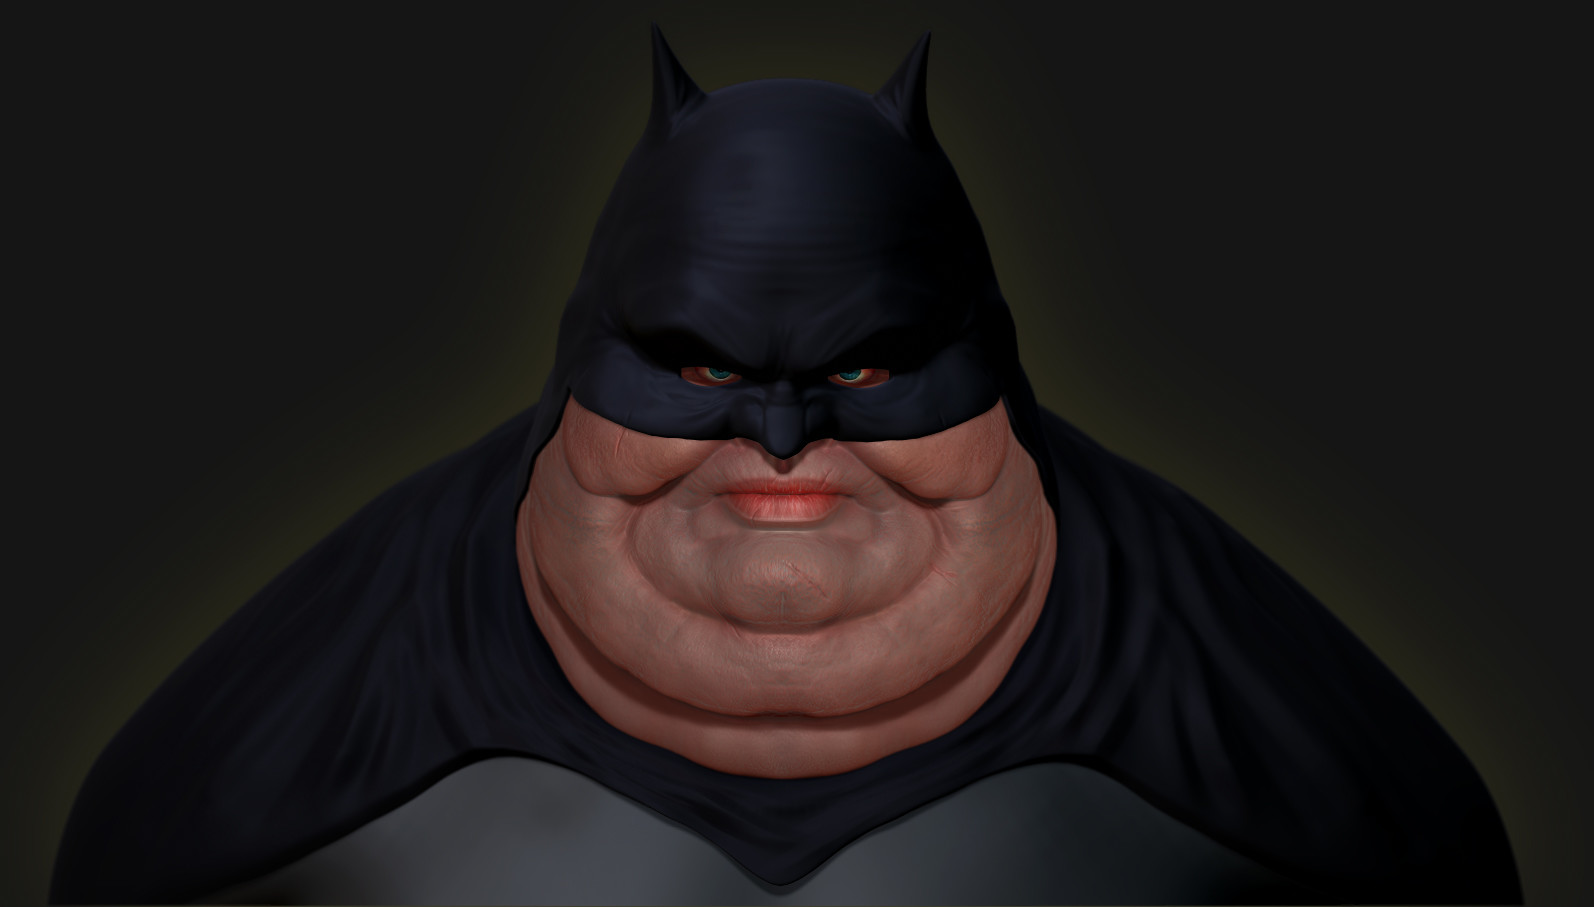 Lee Bowditch - Fat Batman